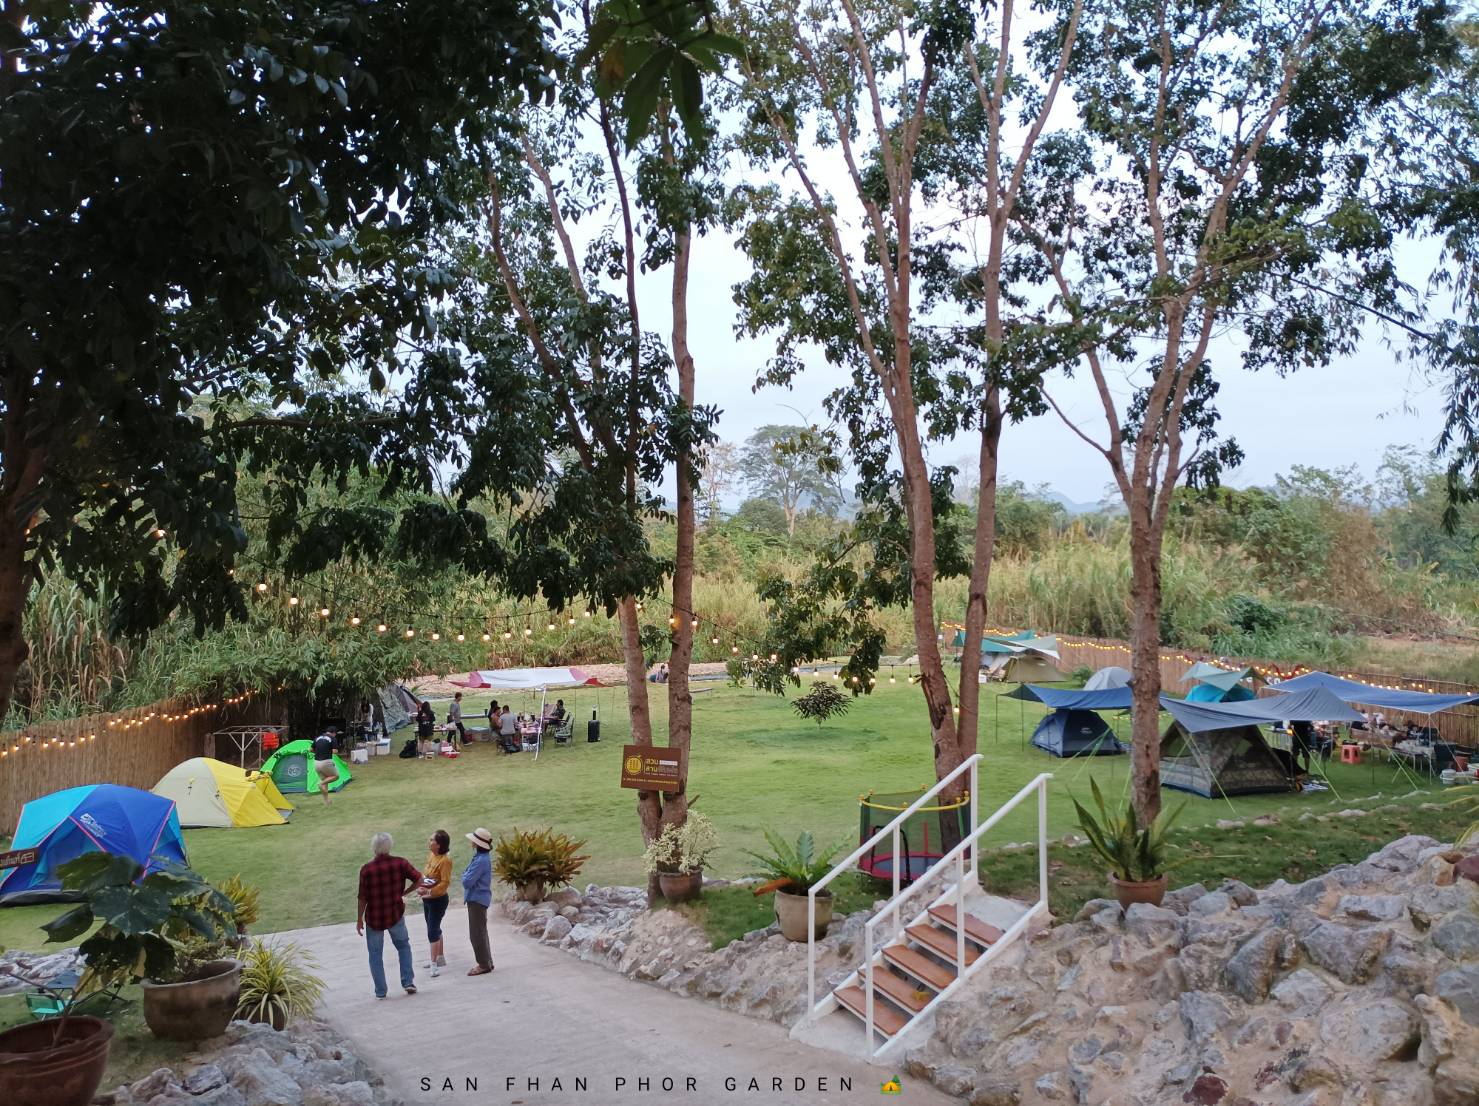 รูป สวนสานฝันพ่อ ป่าละอู ป่าเด็ง / SAN FHAN PHOR GARDEN Camping